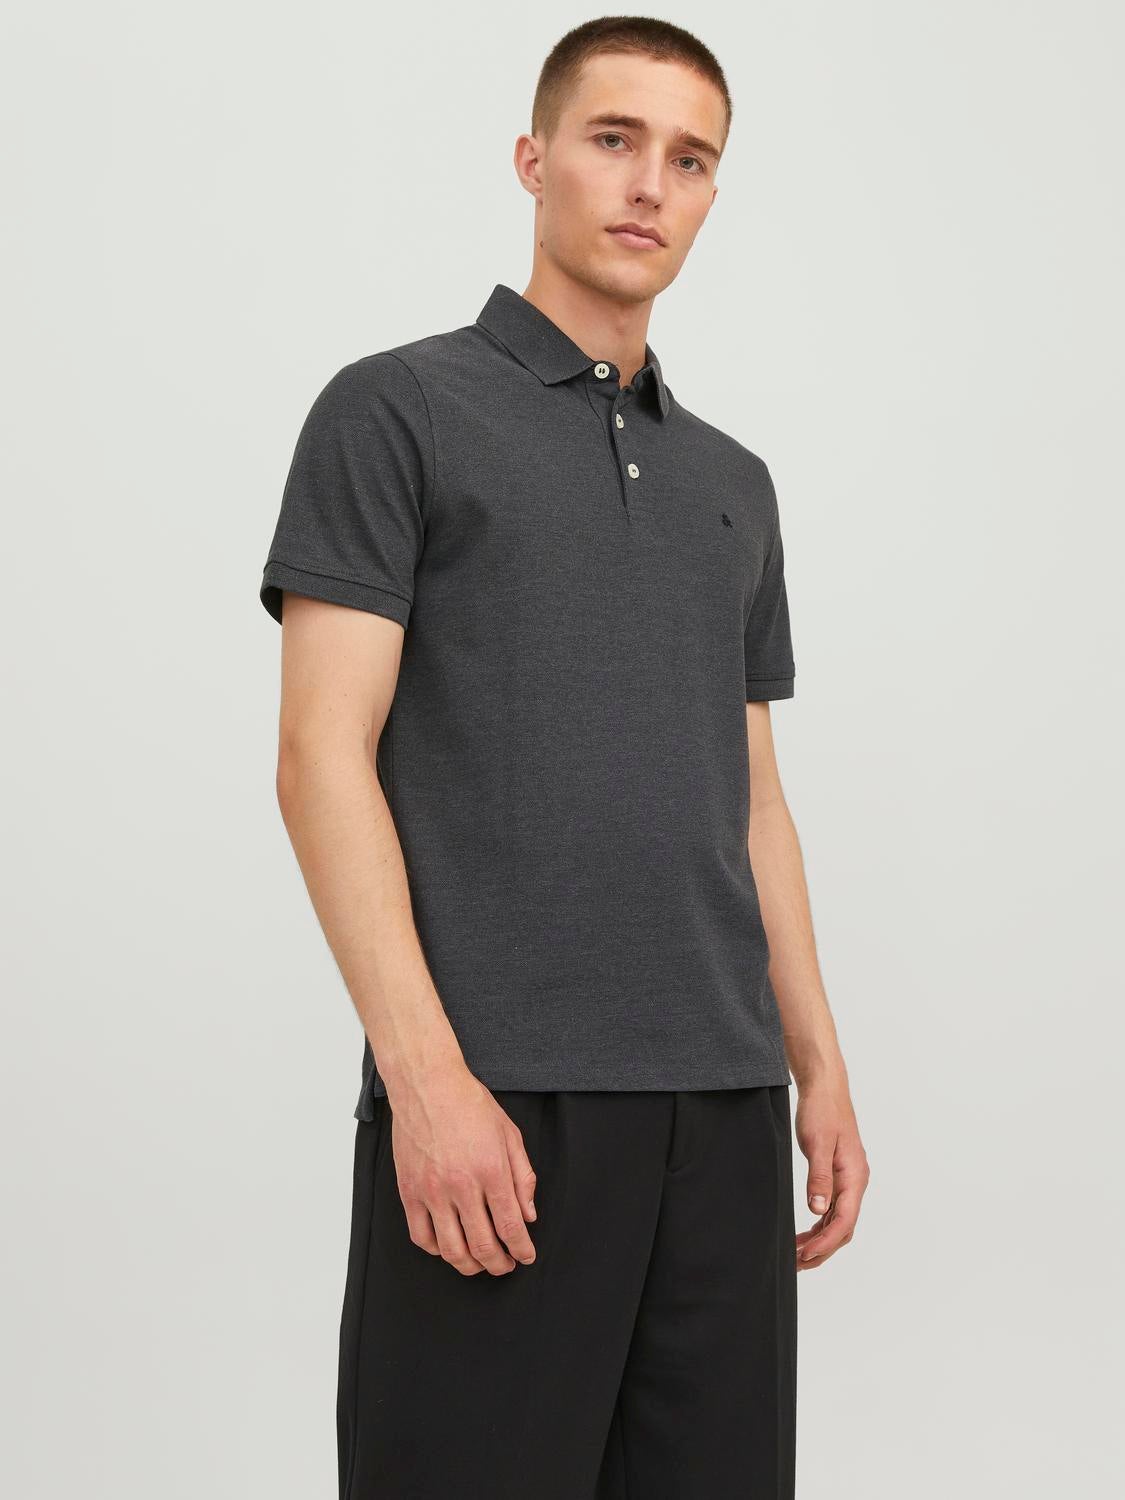 Dunkelblau XL HERREN Hemden & T-Shirts Basisch Zara Poloshirt Rabatt 78 % 